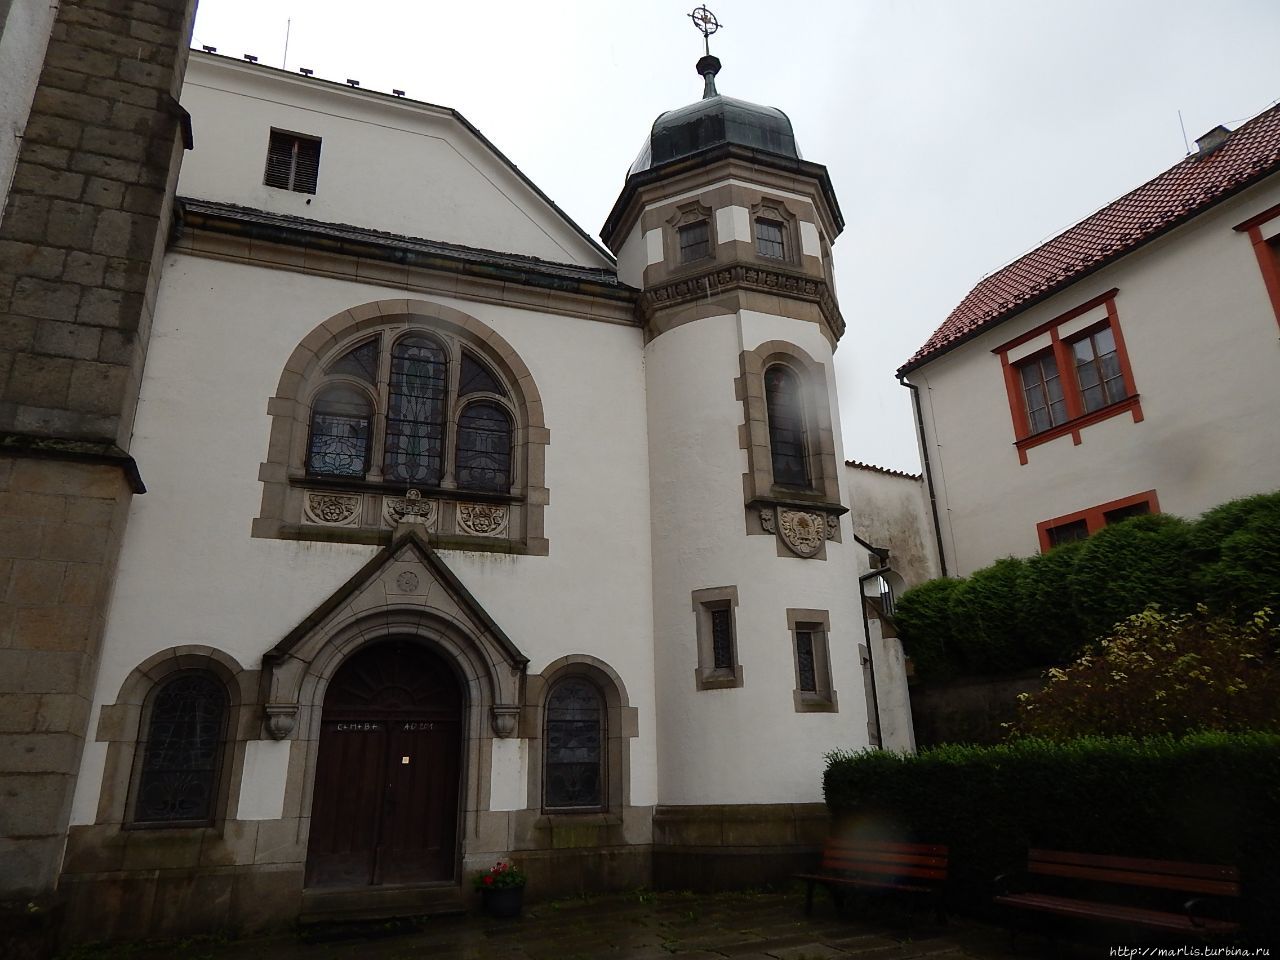 Цистерианское аббатство Виши-брод/Хёенфурт Вышши-Брод, Чехия